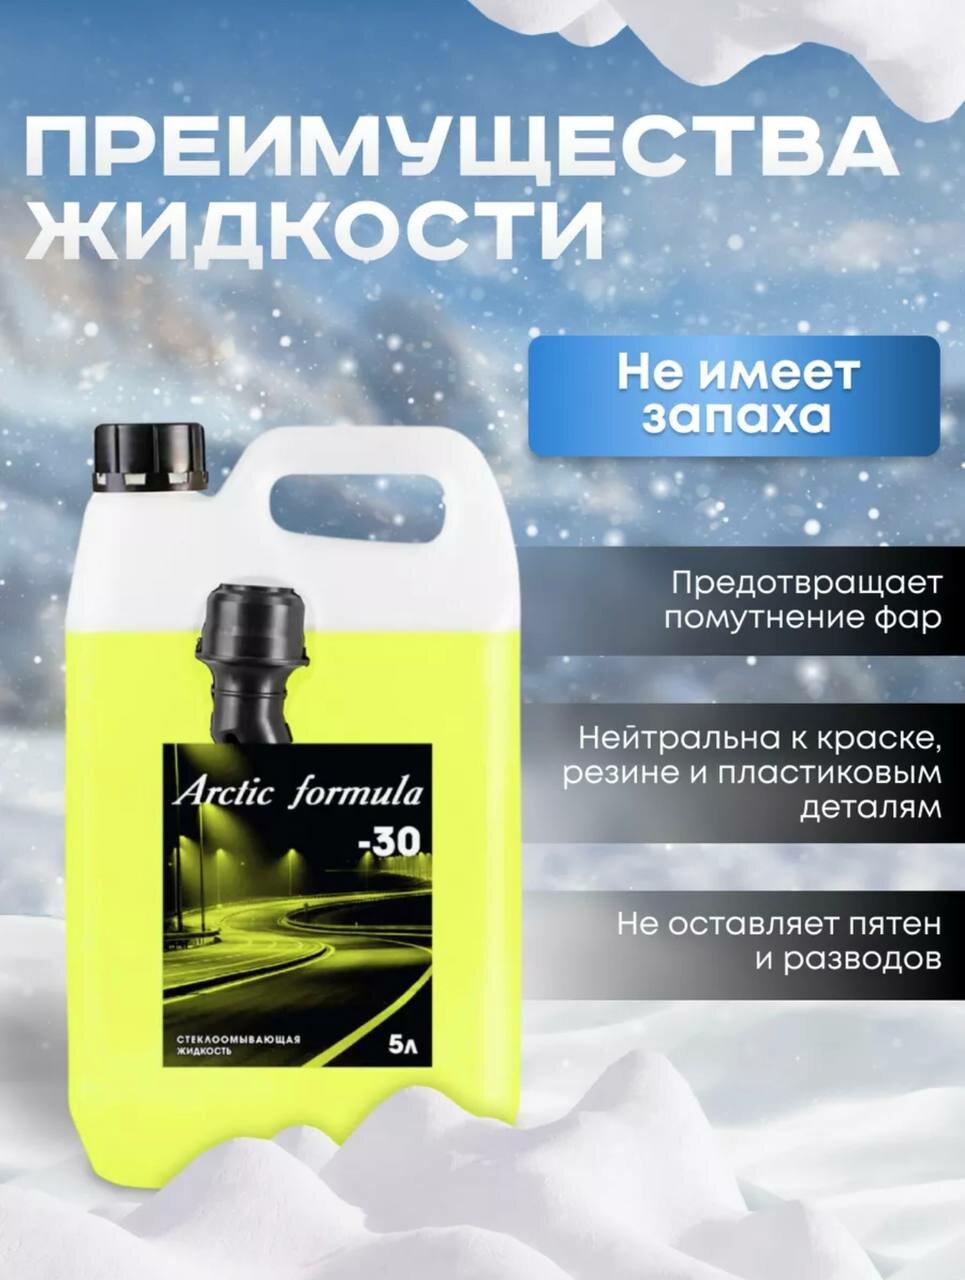 Arctic Formula - Незамерзающий зимний стеклоомыватель до -30 градусов